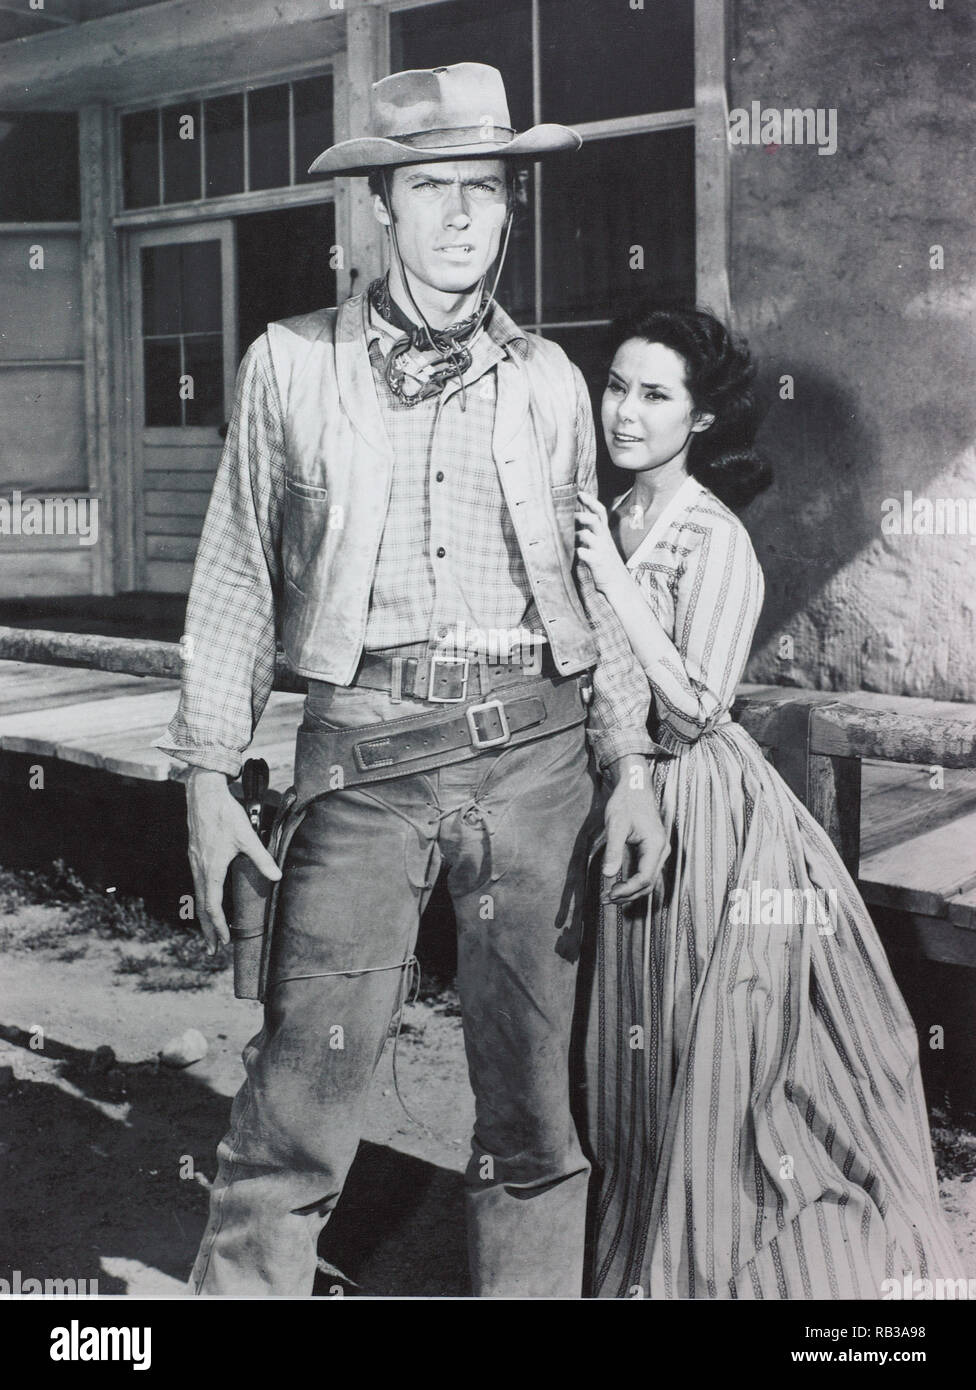 Original Film Titel: RAWHIDE-TV. Englischer Titel: RAWHIDE-TV. Jahr: 1959.  Stars: Clint Eastwood. Credit: M.G.M FERNSEHEN/CBS Television/Album  Stockfotografie - Alamy